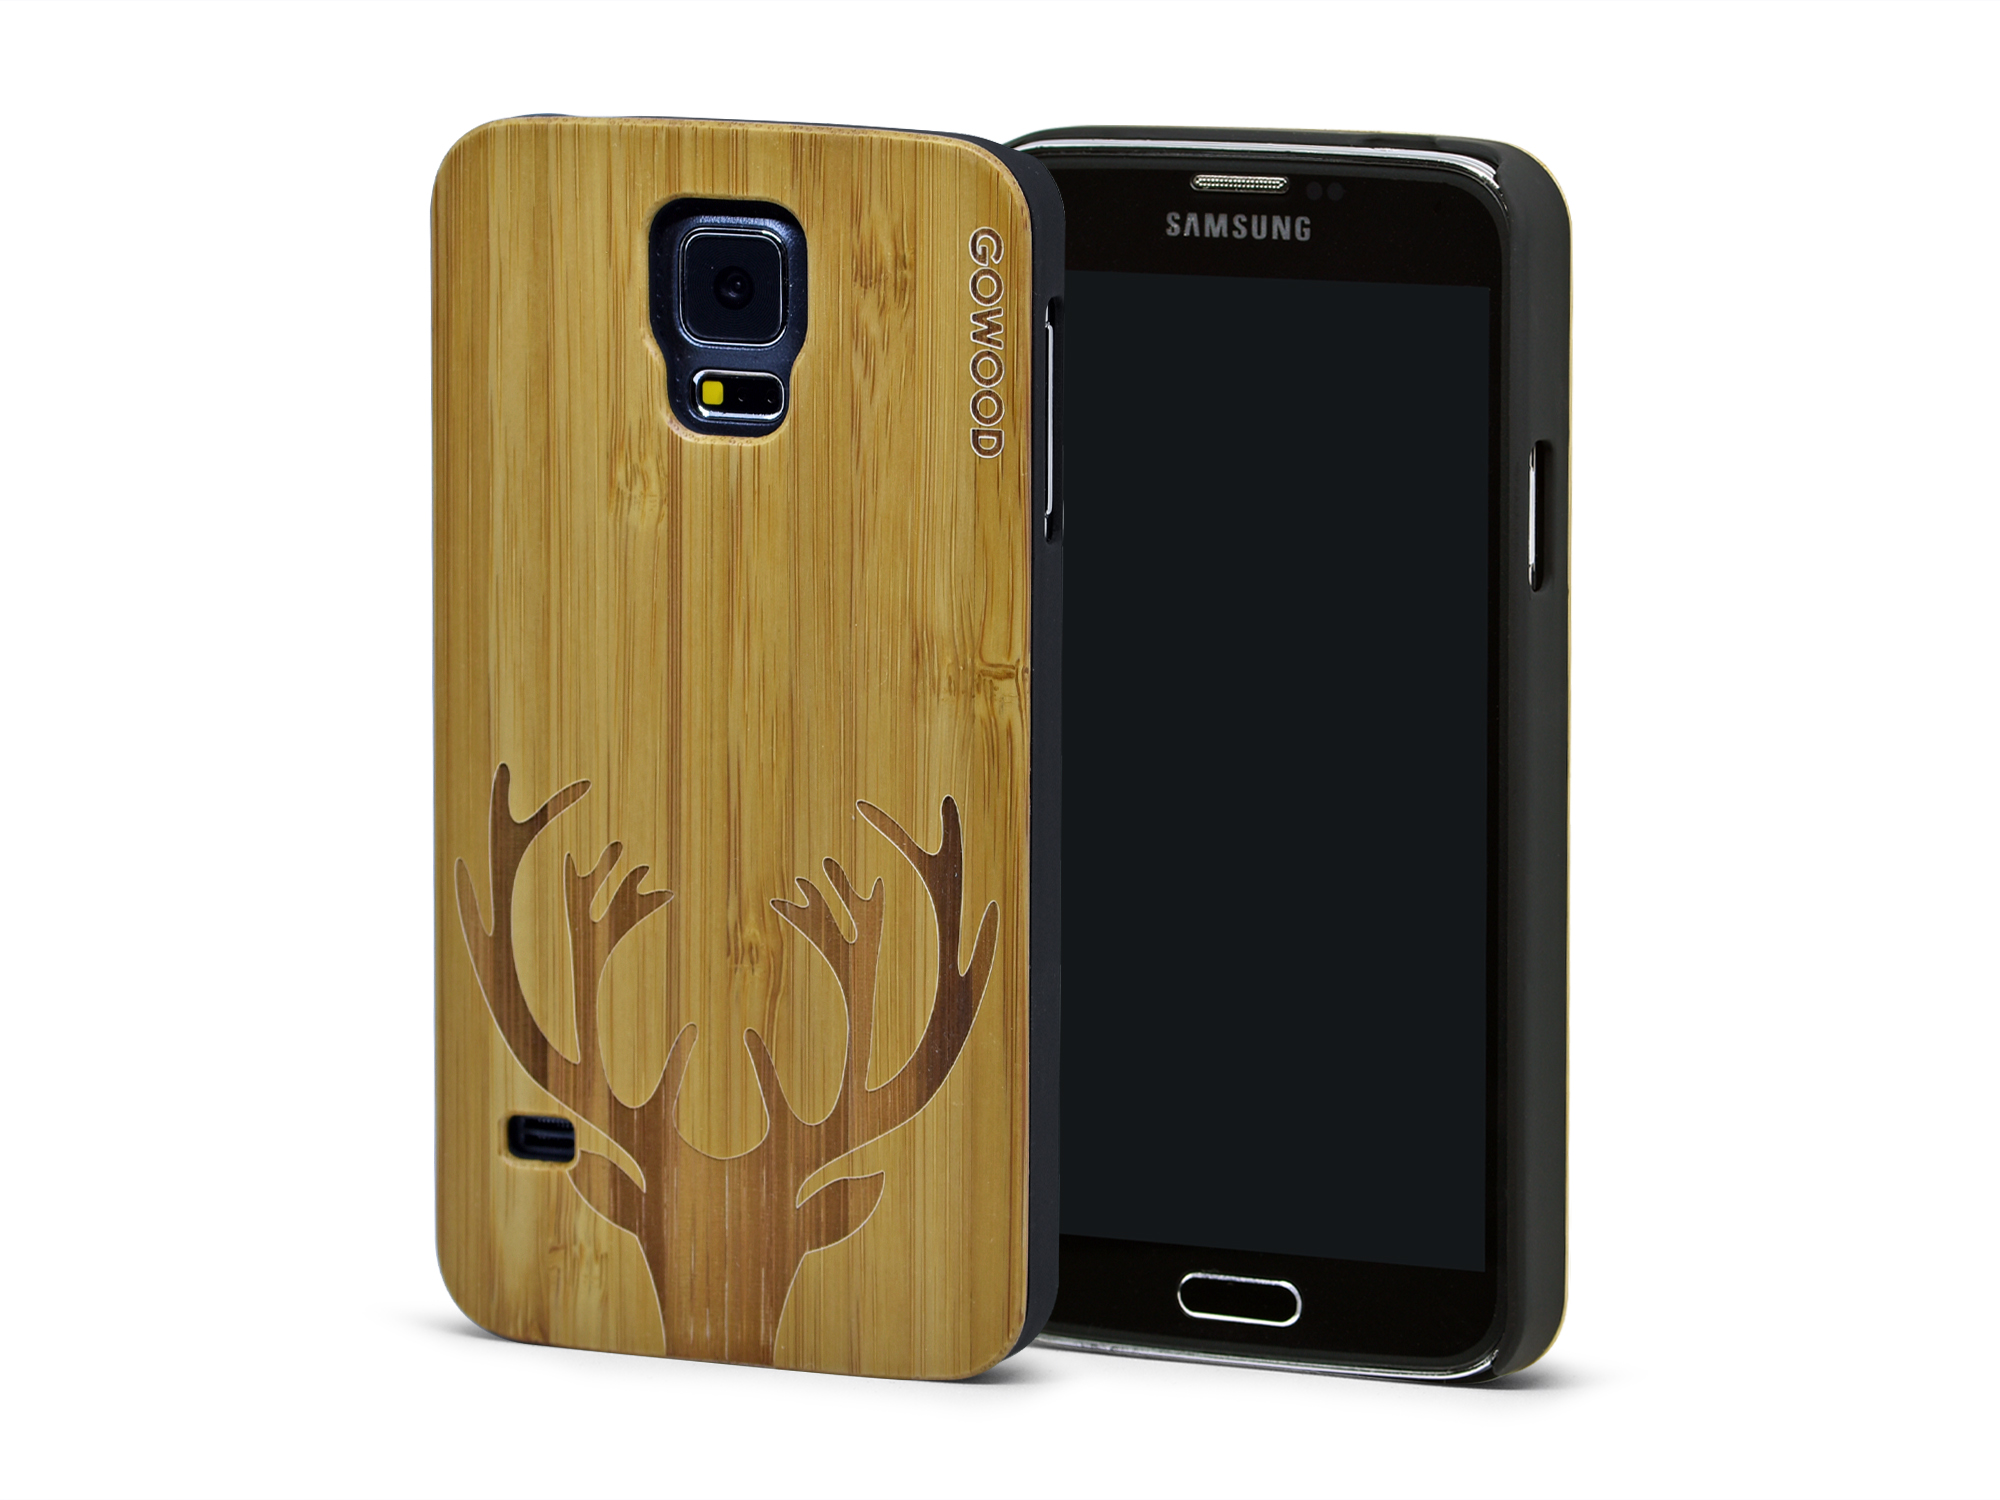 Samsung Galaxy S5 case